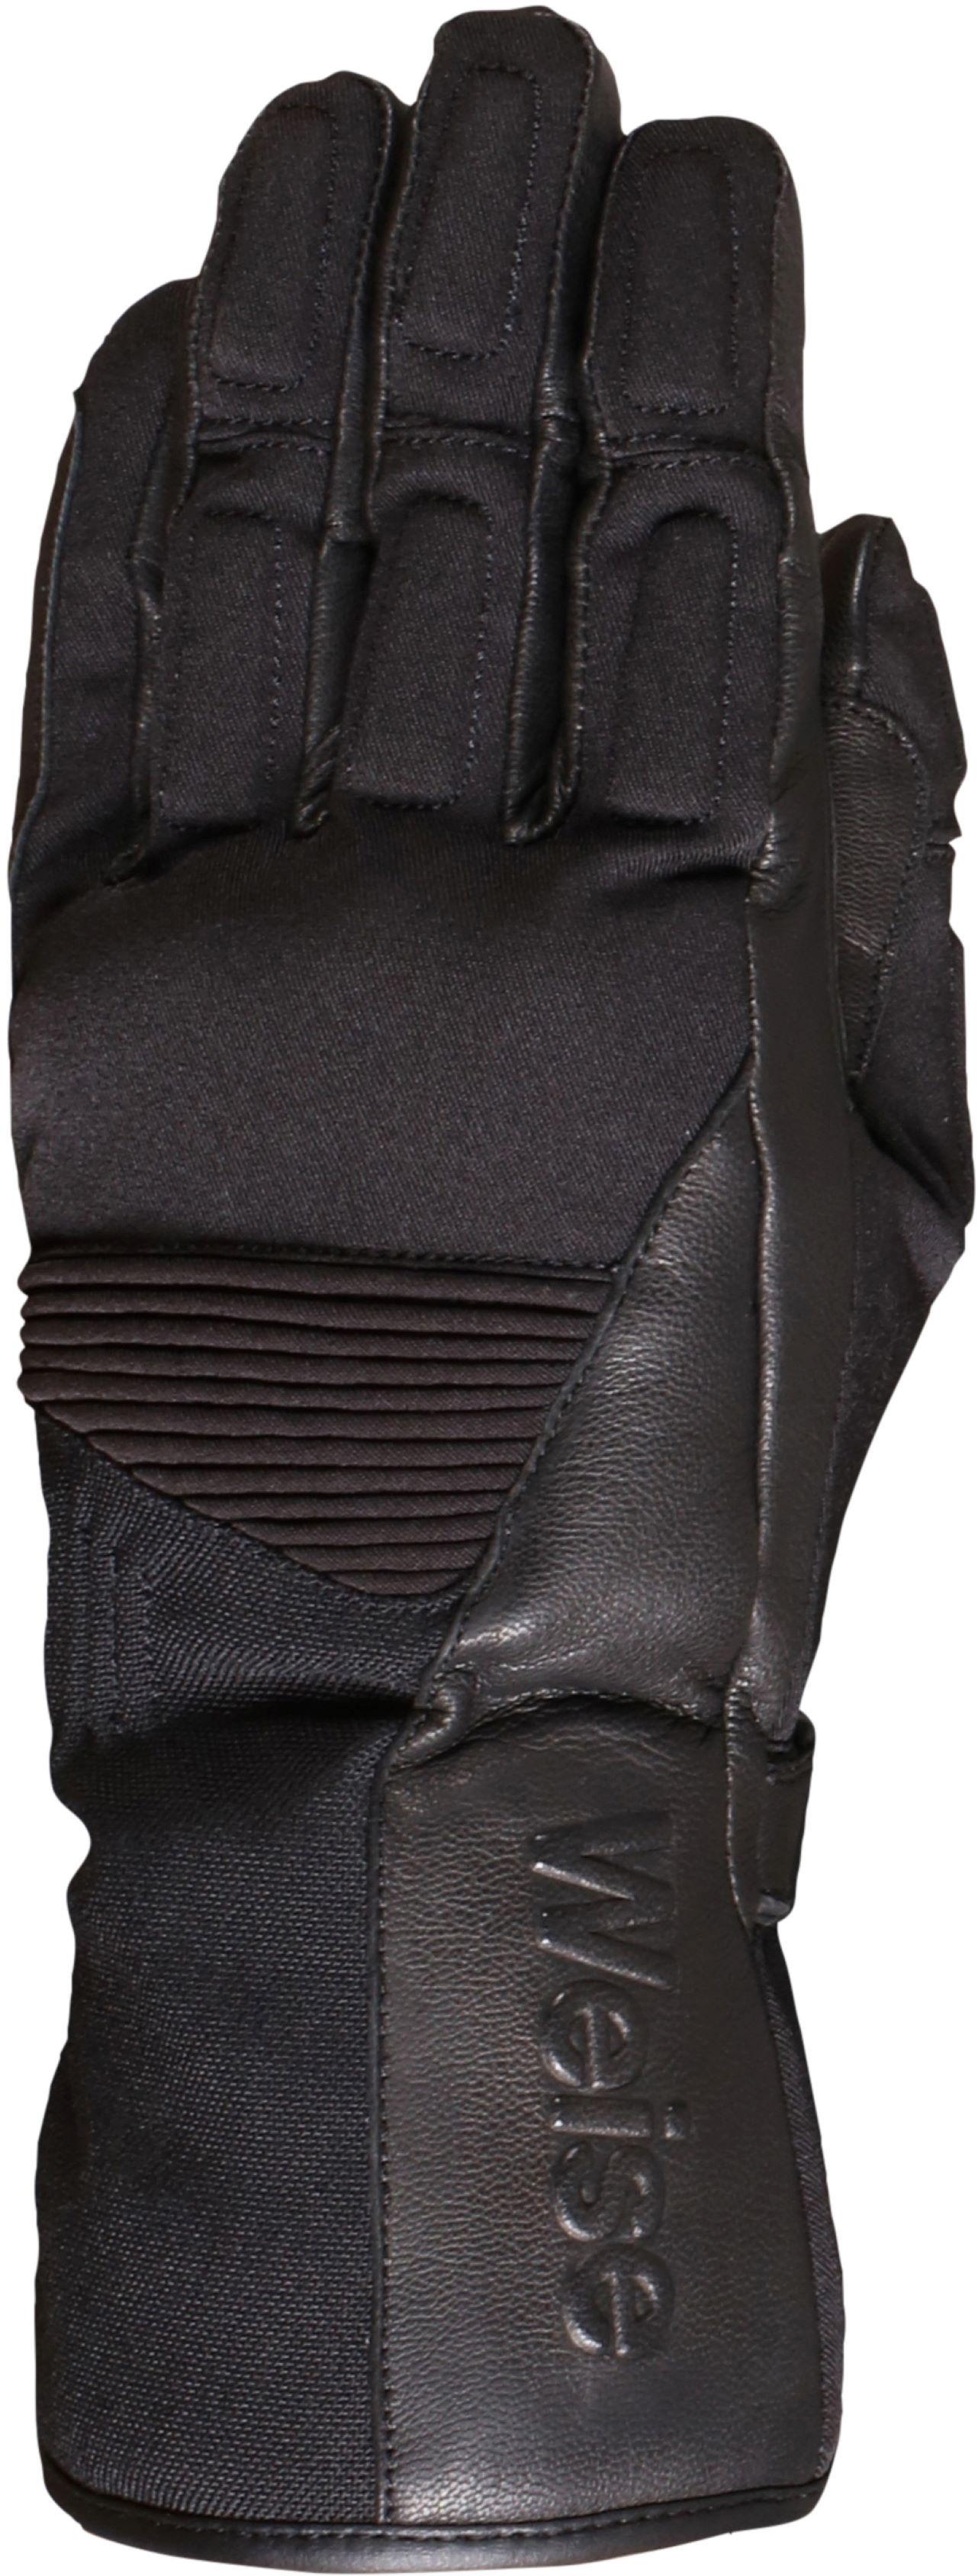 Weise Rider Motorcycle Gloves - Black, Xl